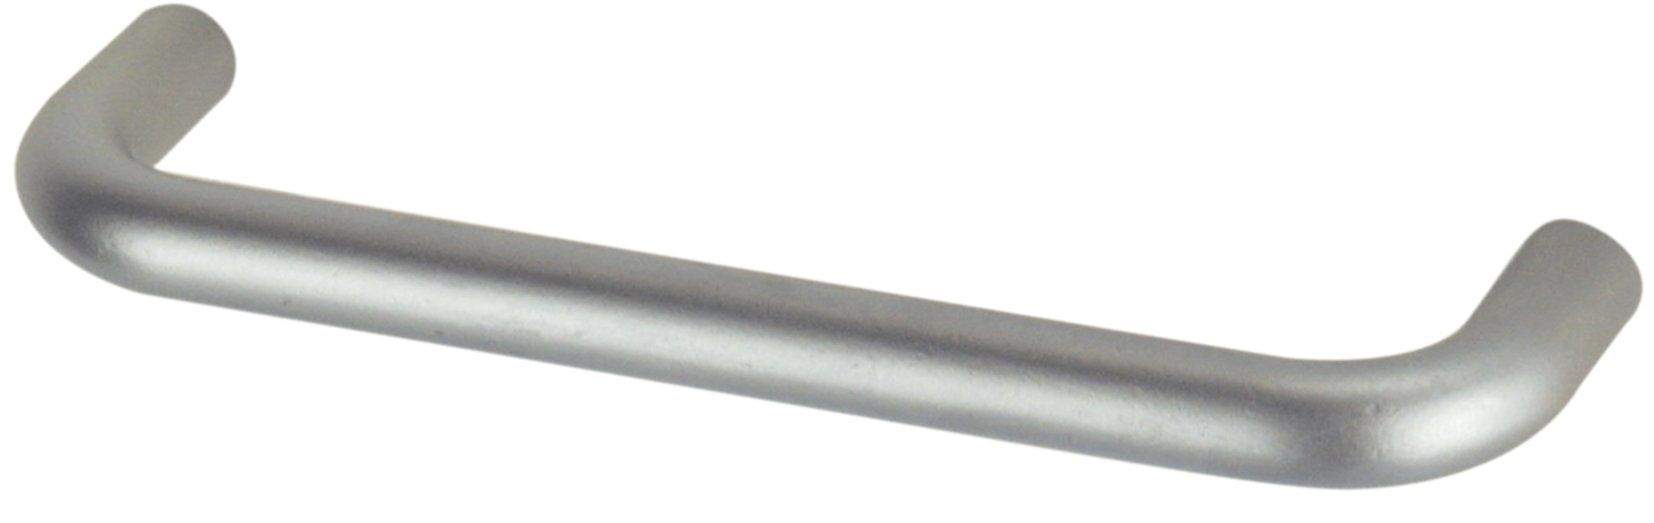 Drahtgriff mit verchromtem Stahleinsatz, L.136mm, D.8mm, T.28mm, Achsabstand 128mm, 1 Stück mit Schrauben.